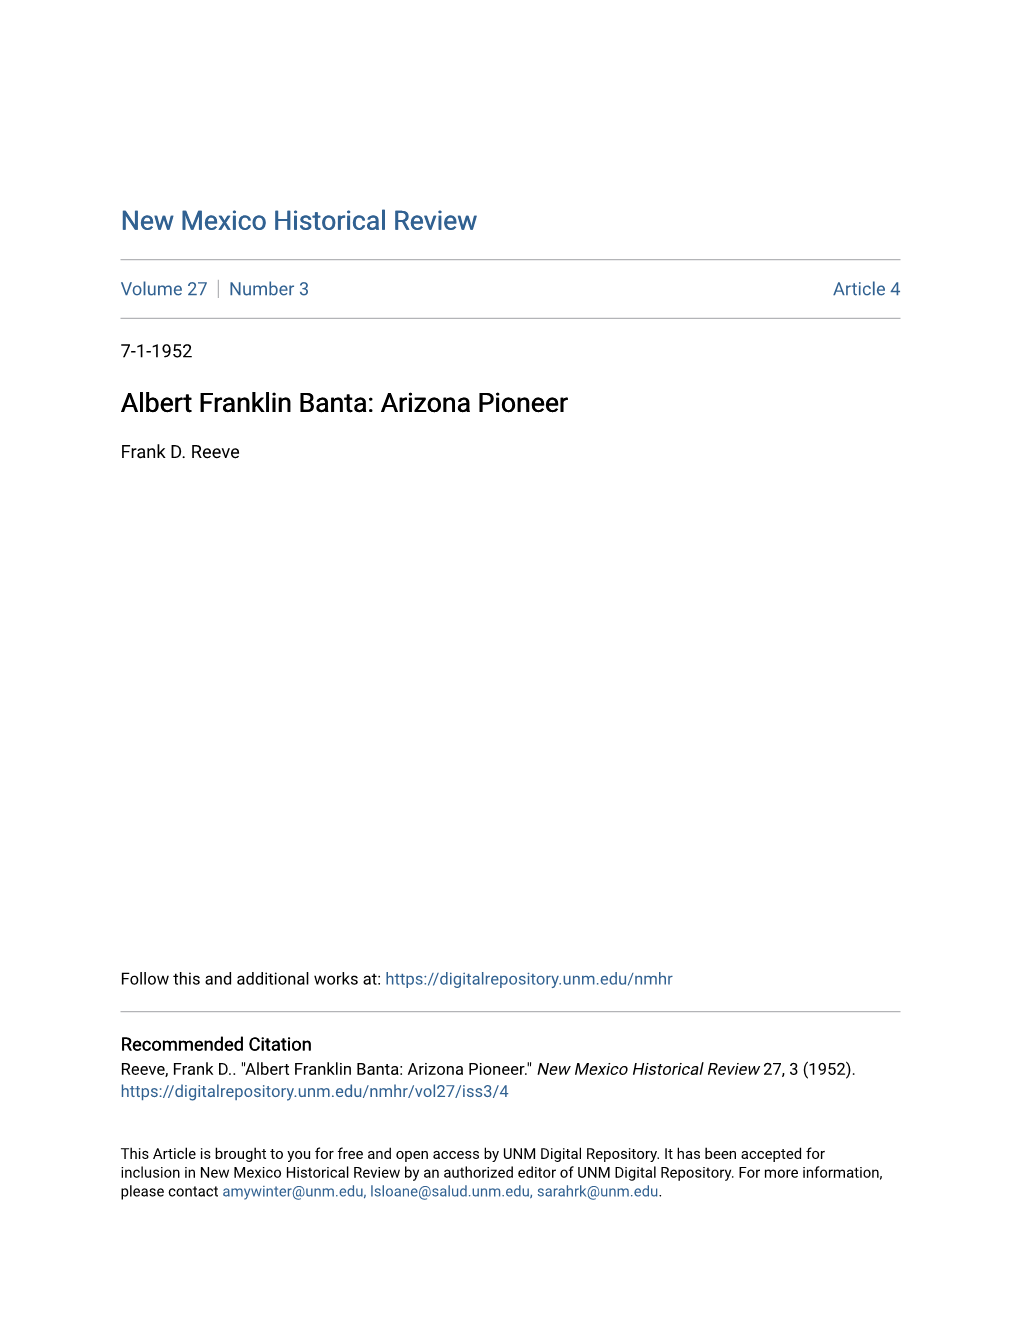 Albert Franklin Banta: Arizona Pioneer